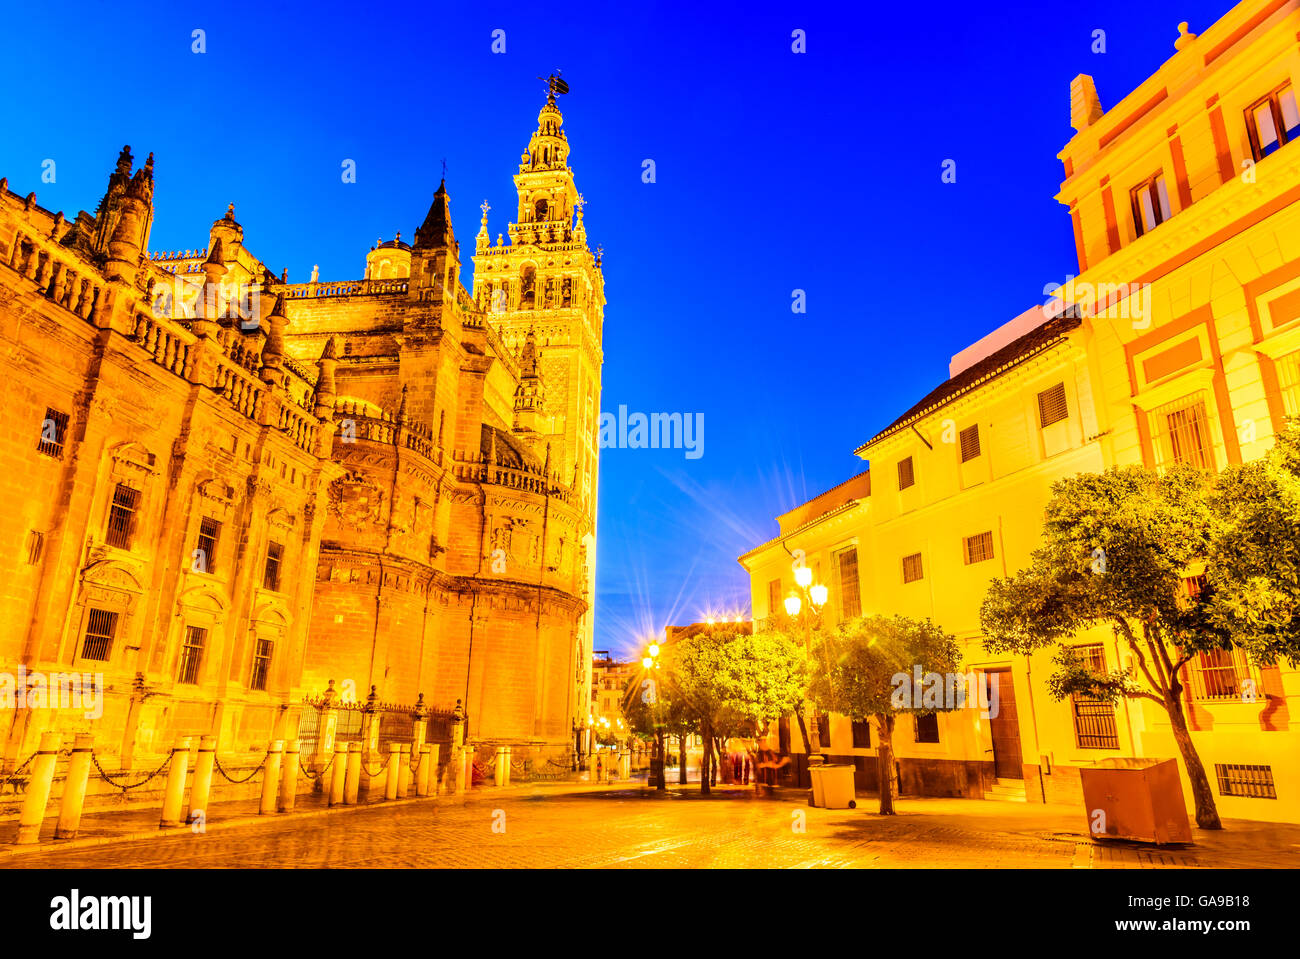 Séville, Andalousie, espagne. Cityscape twilight image avec Santa Maria de la Sede de la cathédrale et de la Giralda. Banque D'Images